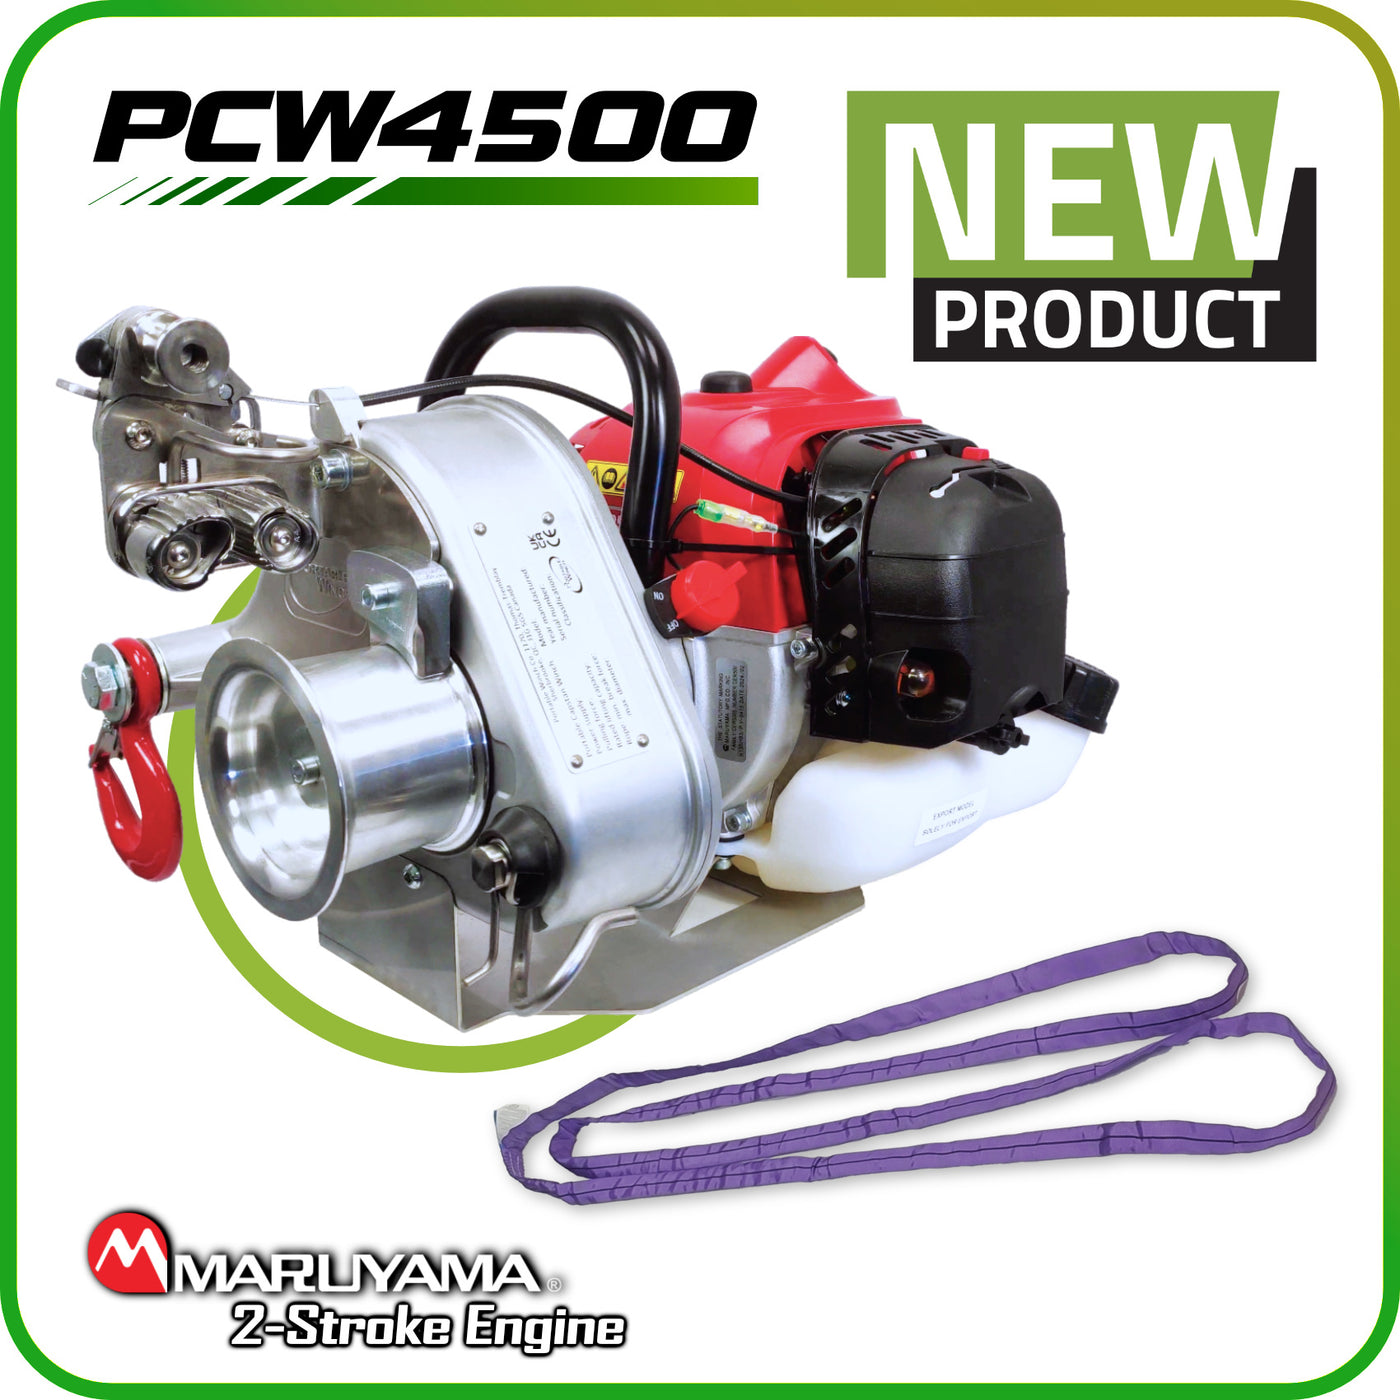 PCW4500 2-stroke winch